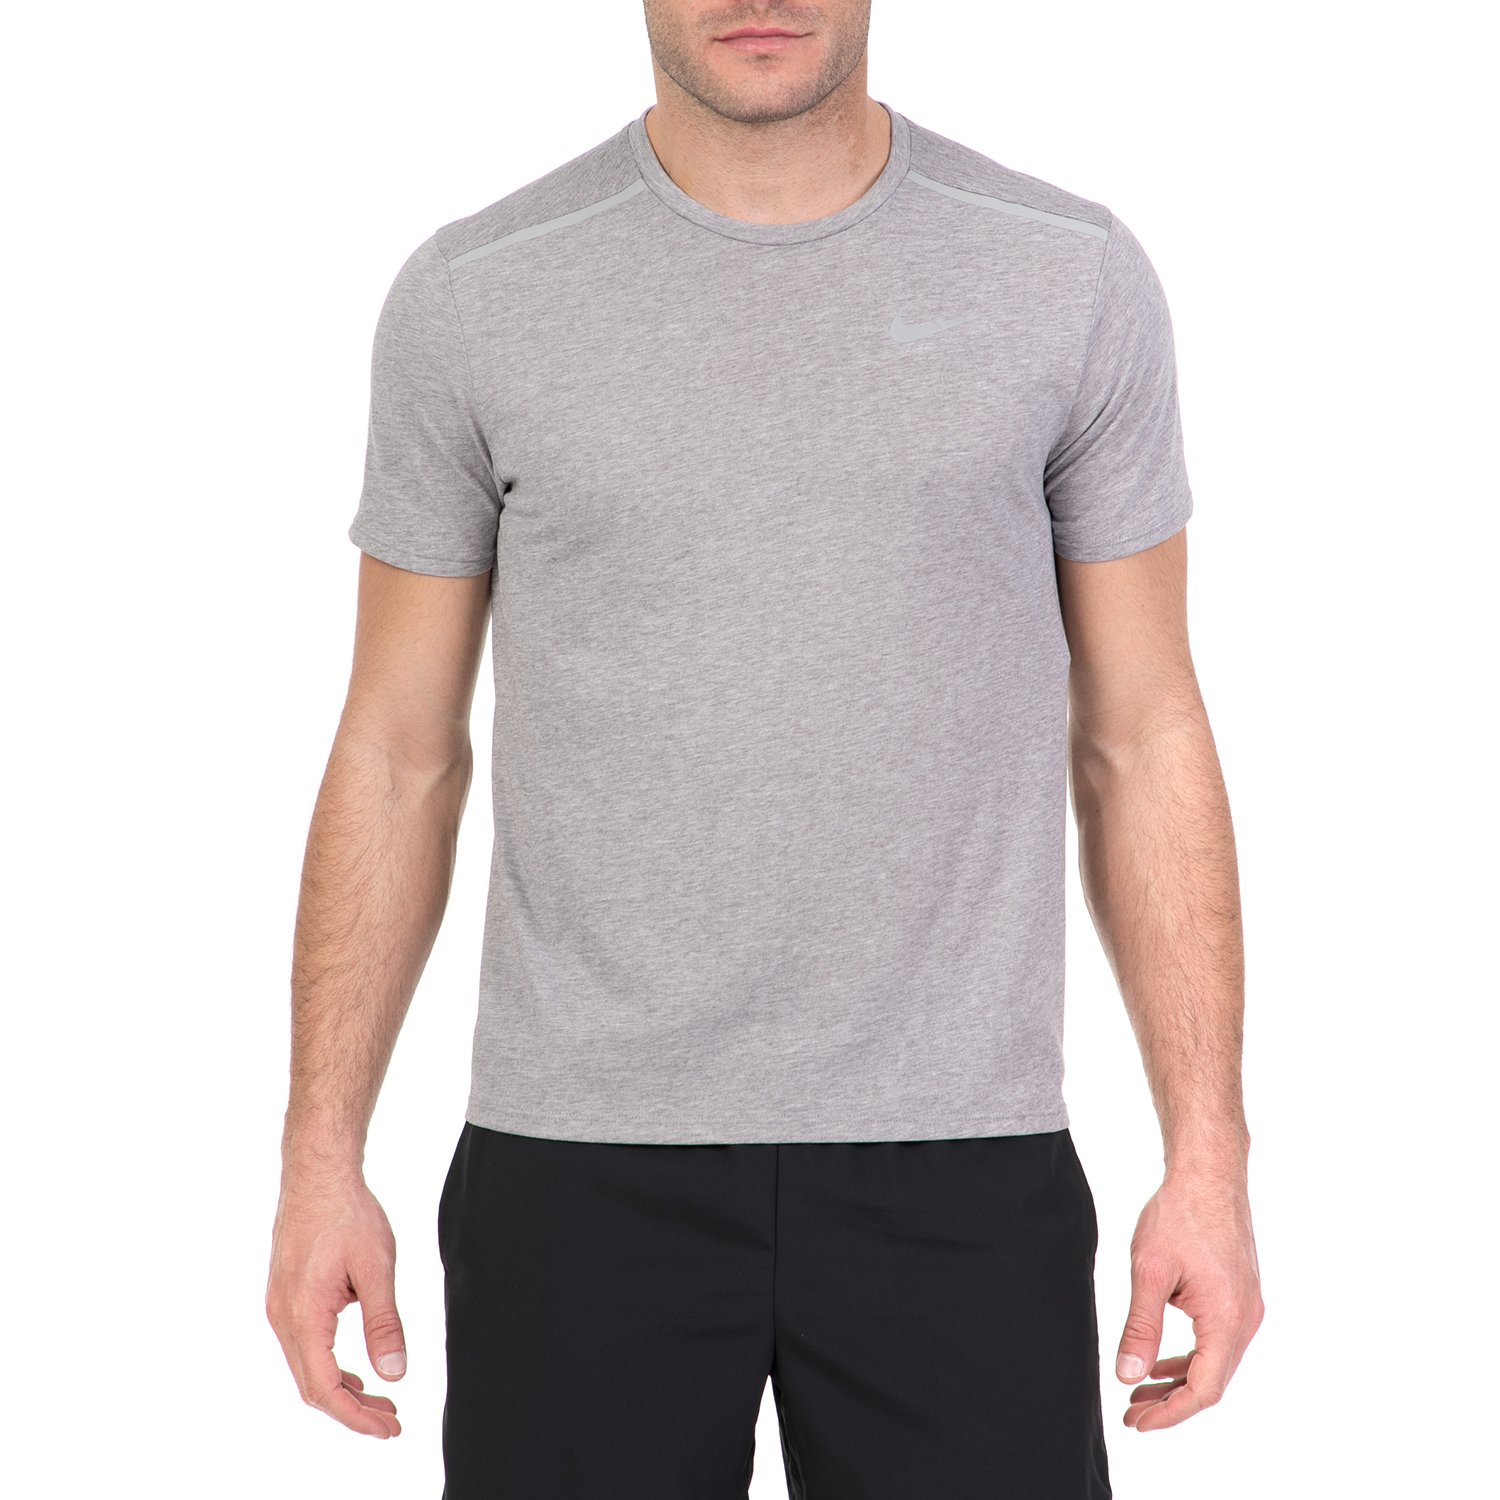 Ανδρικά/Ρούχα/Αθλητικά/T-shirt NIKE - Ανδρική κοντομάνικη μπούζα Nike TAILWIND γκρι